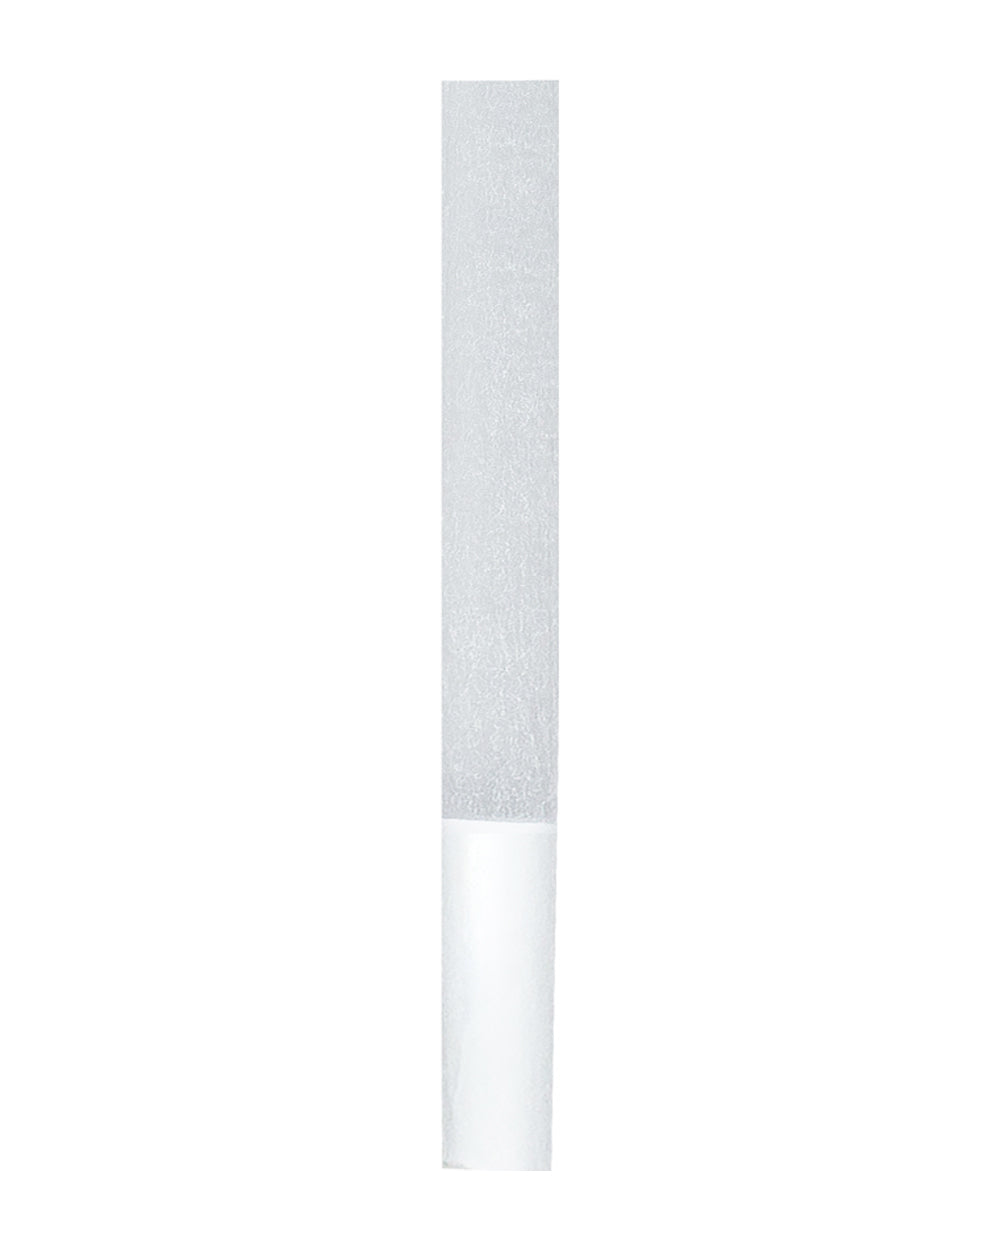 FUTUROLA | Straight 1 1/4 Size Pre-Rolled Cones | 84mm - Classic White Paper - 900 Count - 2